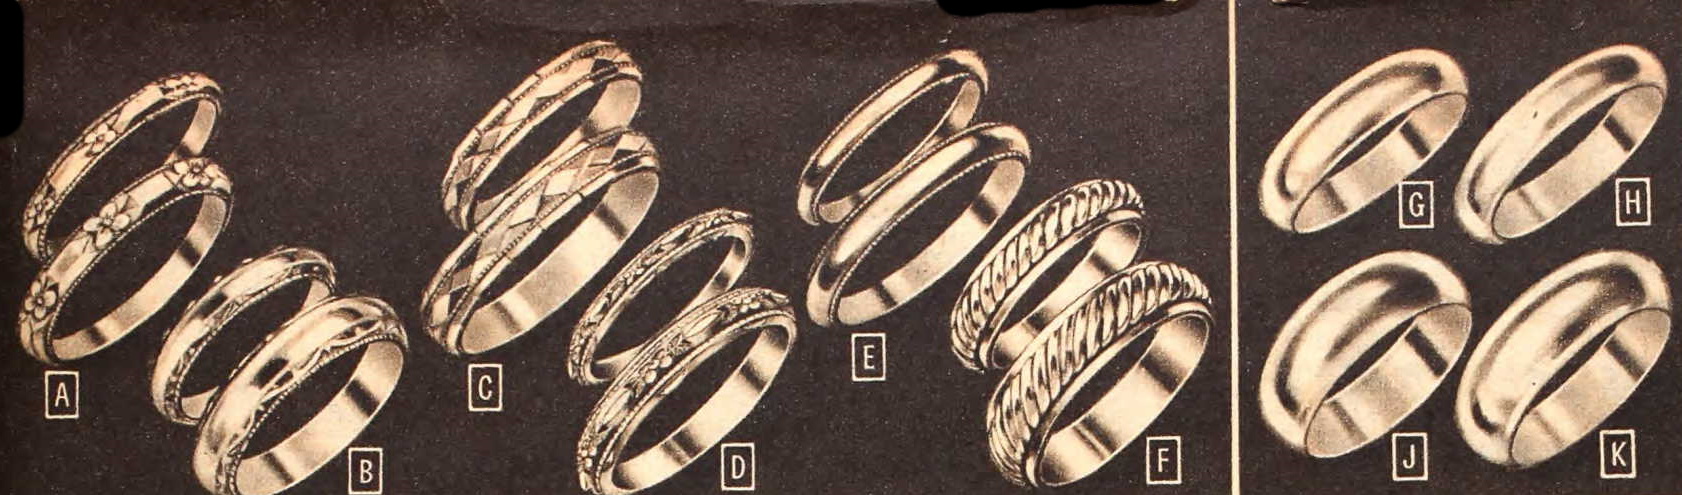 1953 wedding rings men women bride groom